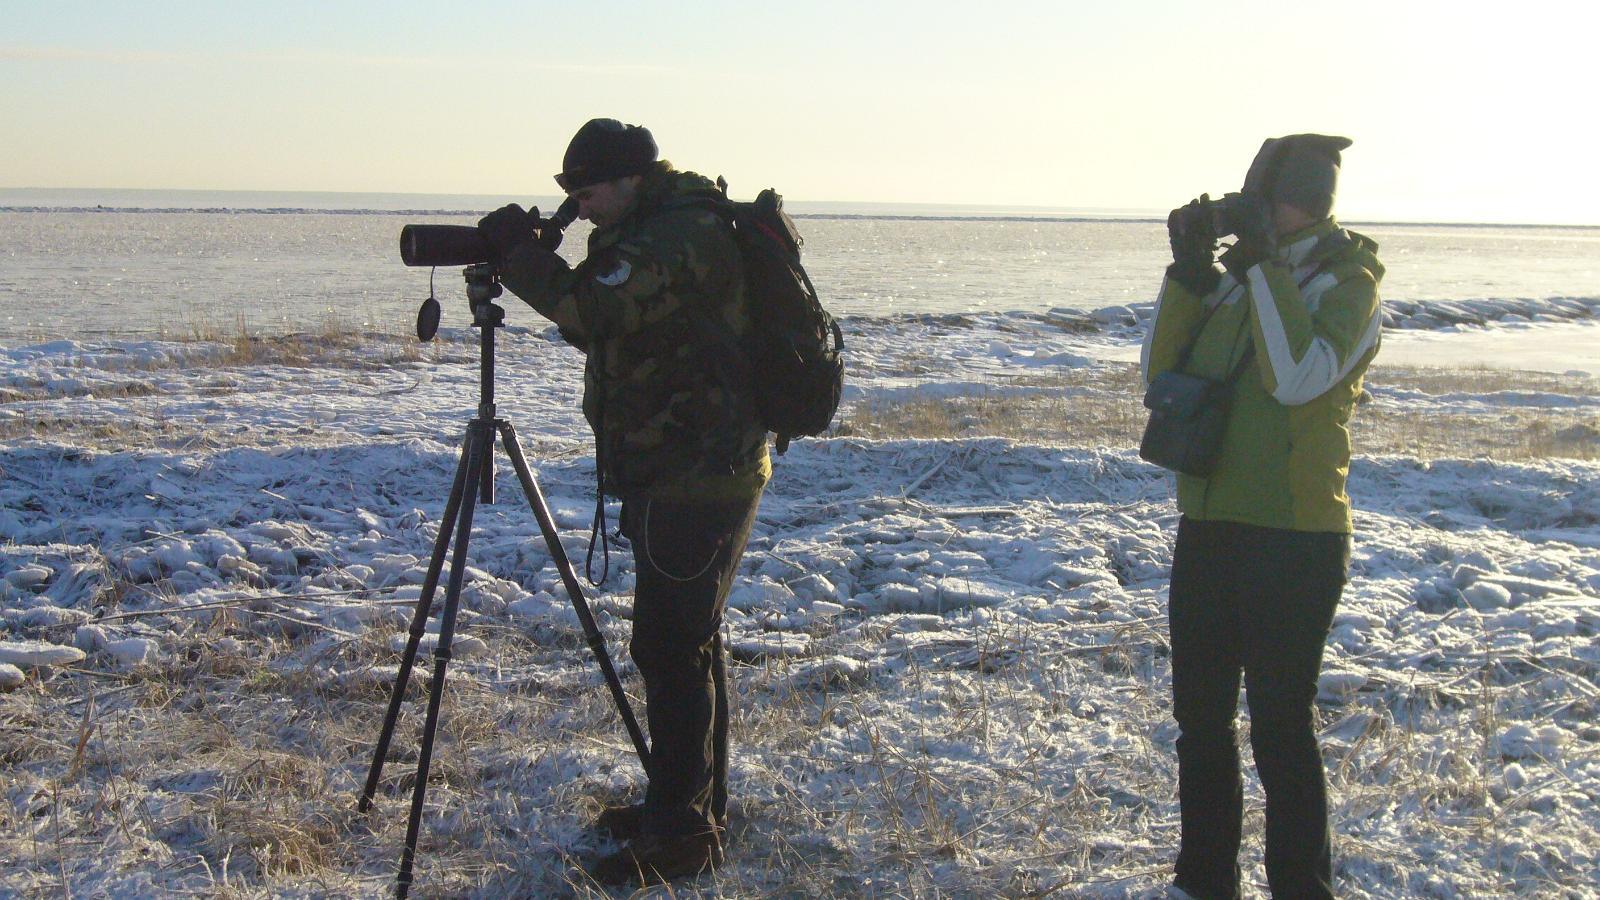 Seikle Vabaks lintujen tarkkailu Pärnunlahden pohjoisrannikolla